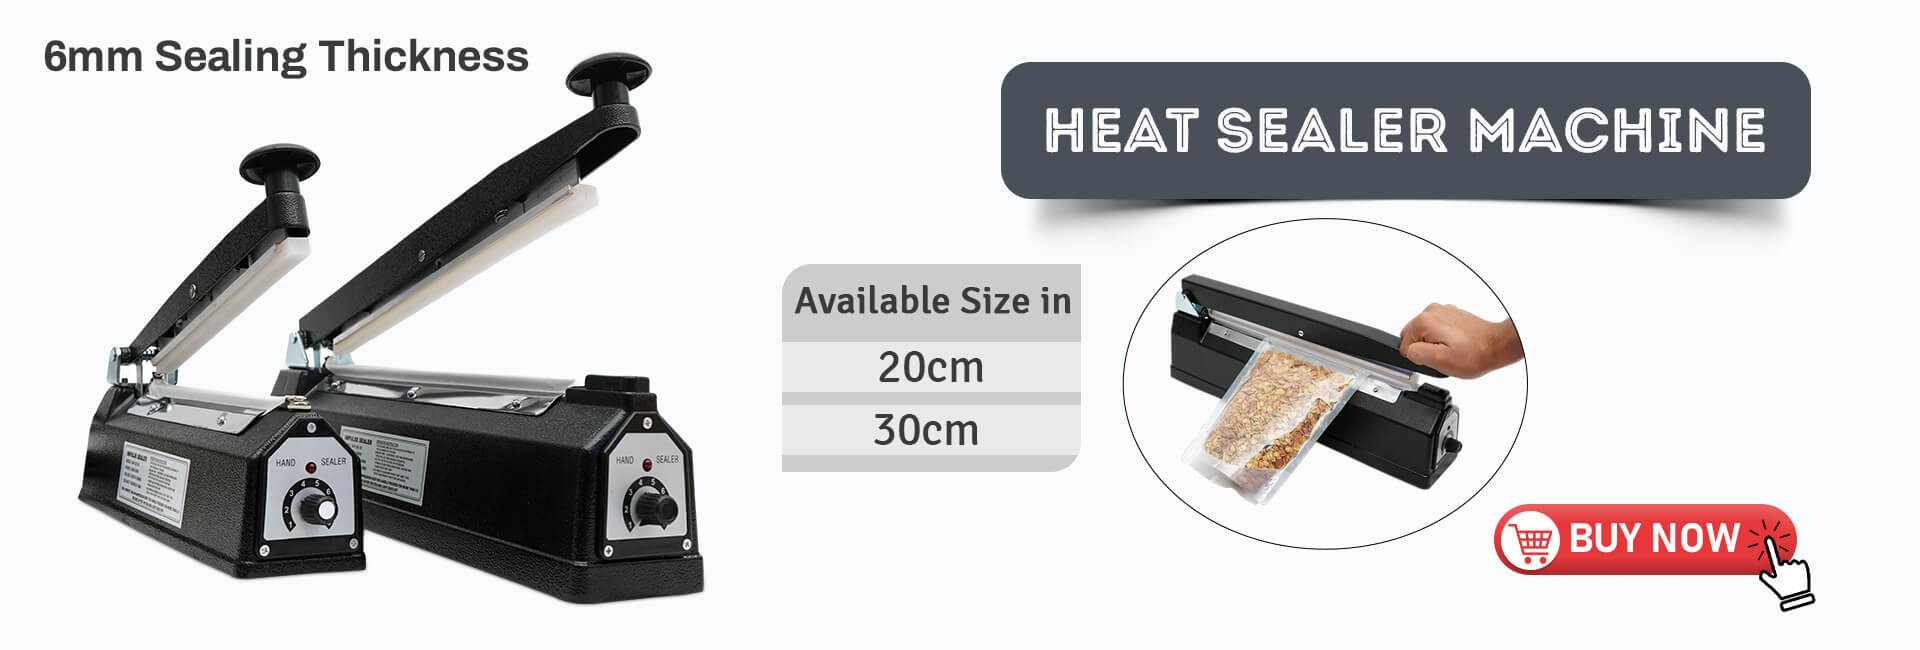 Heat Sealet Machine